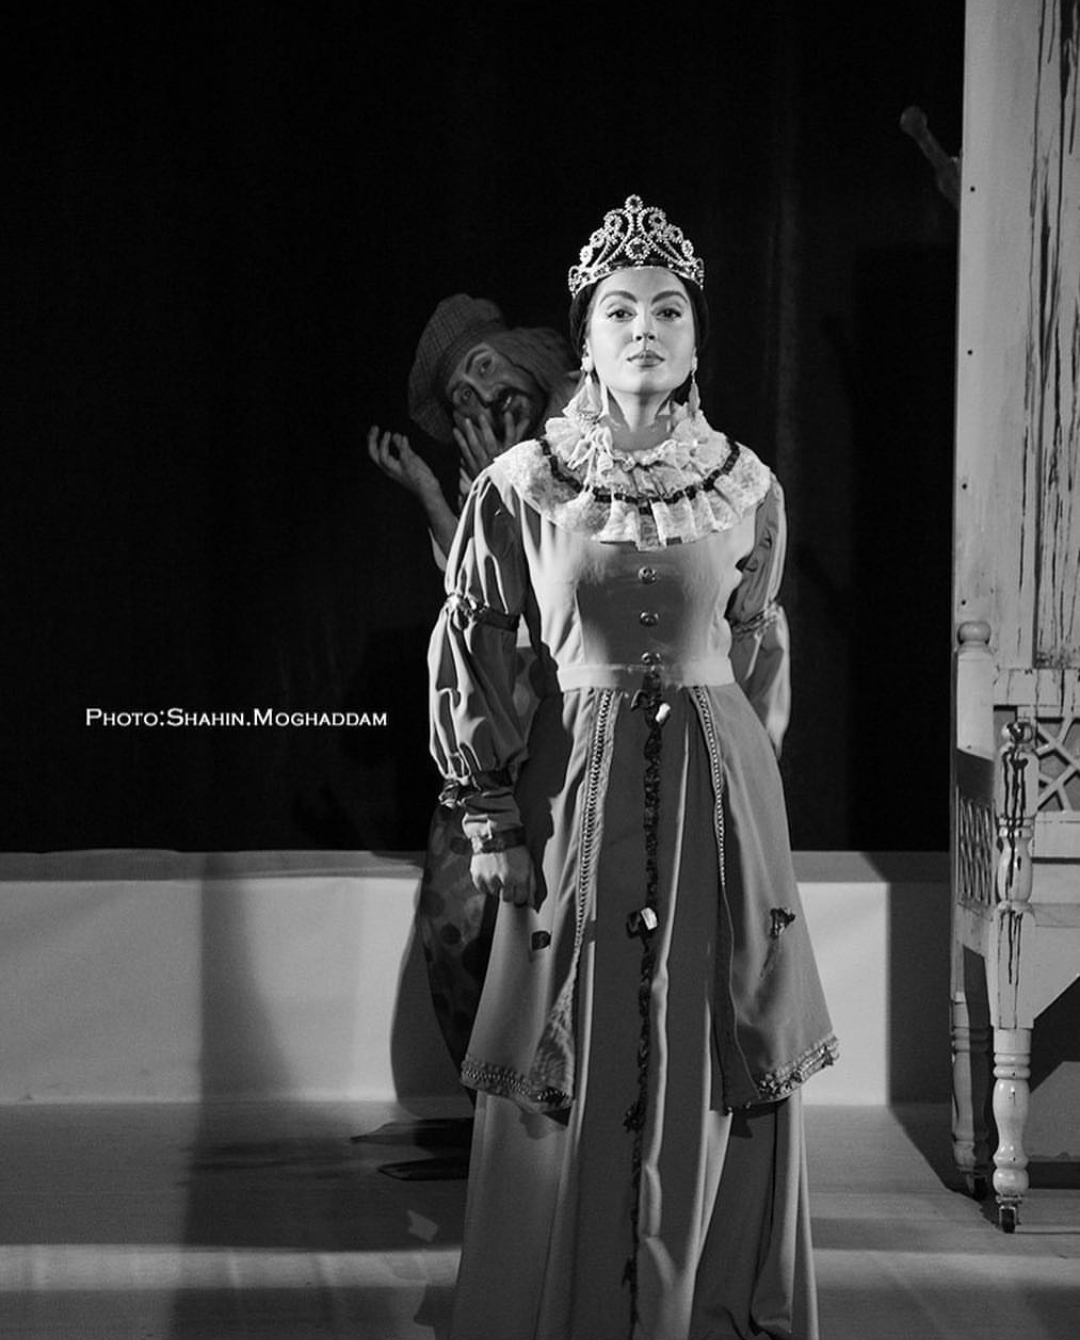 تصویری از مونا کرمی، بازیگر سینما و تلویزیون در حال بازیگری سر صحنه یکی از آثارش